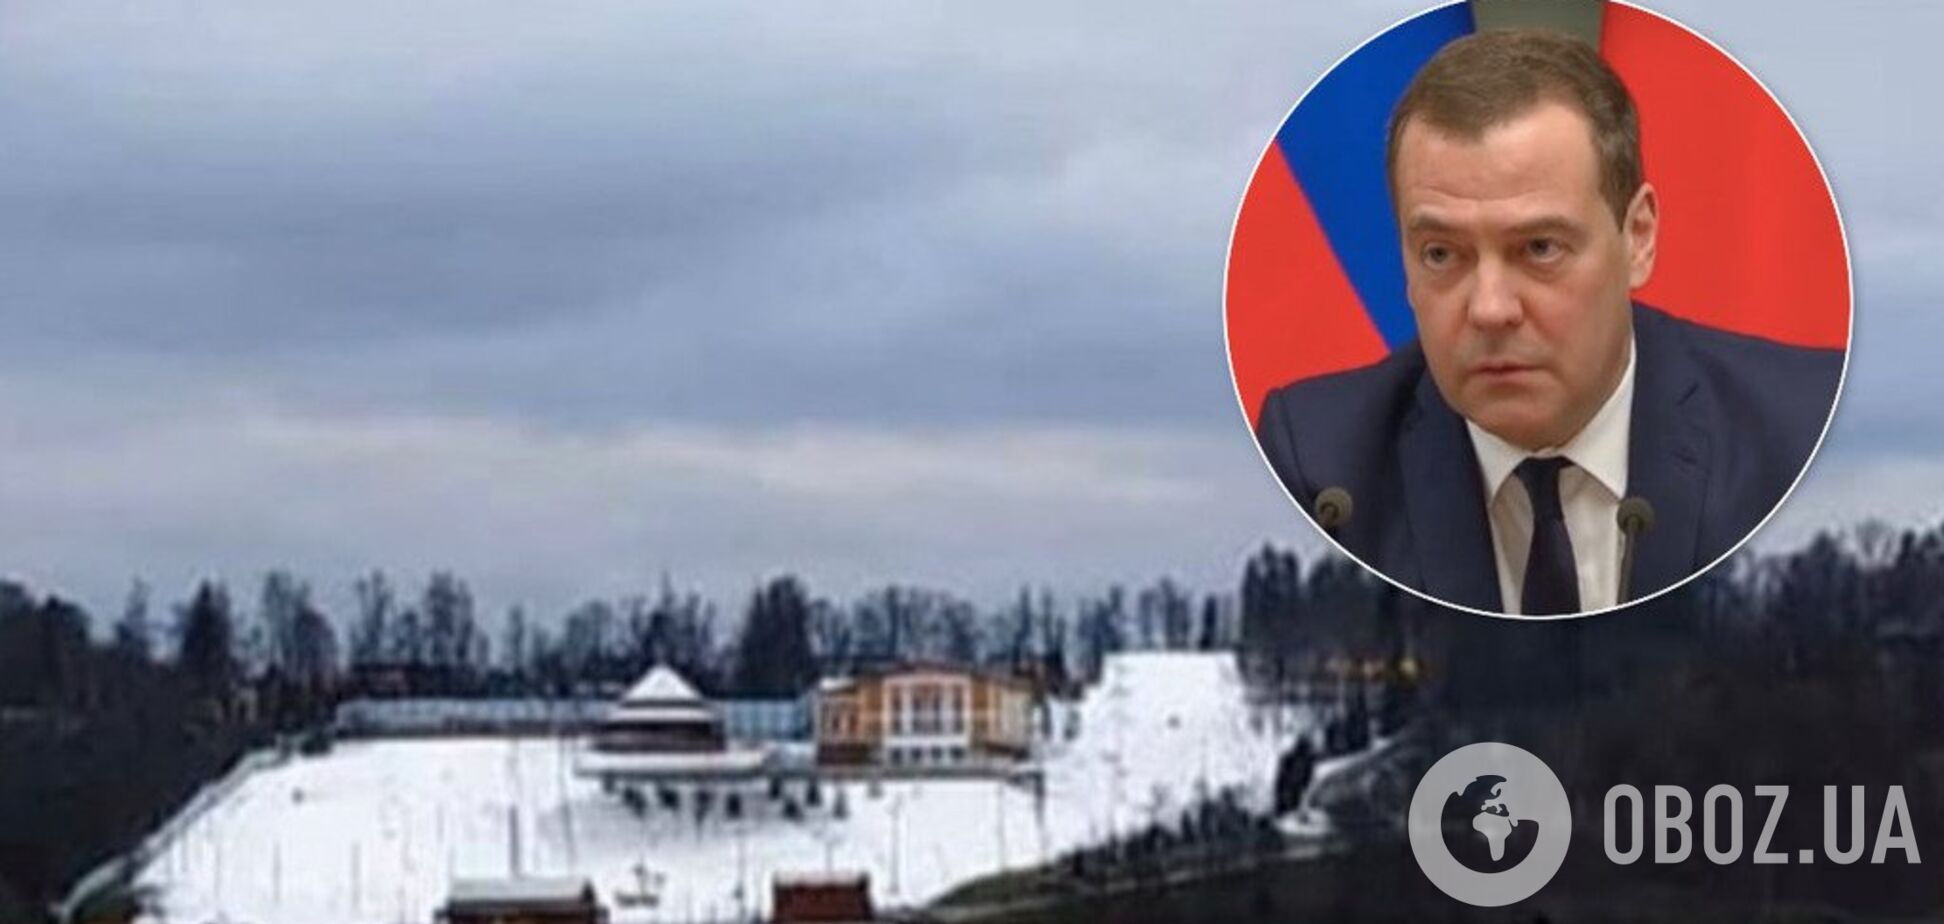 Медведєва згубив сніг: росіяни знайшли причину перестановок у Кремлі